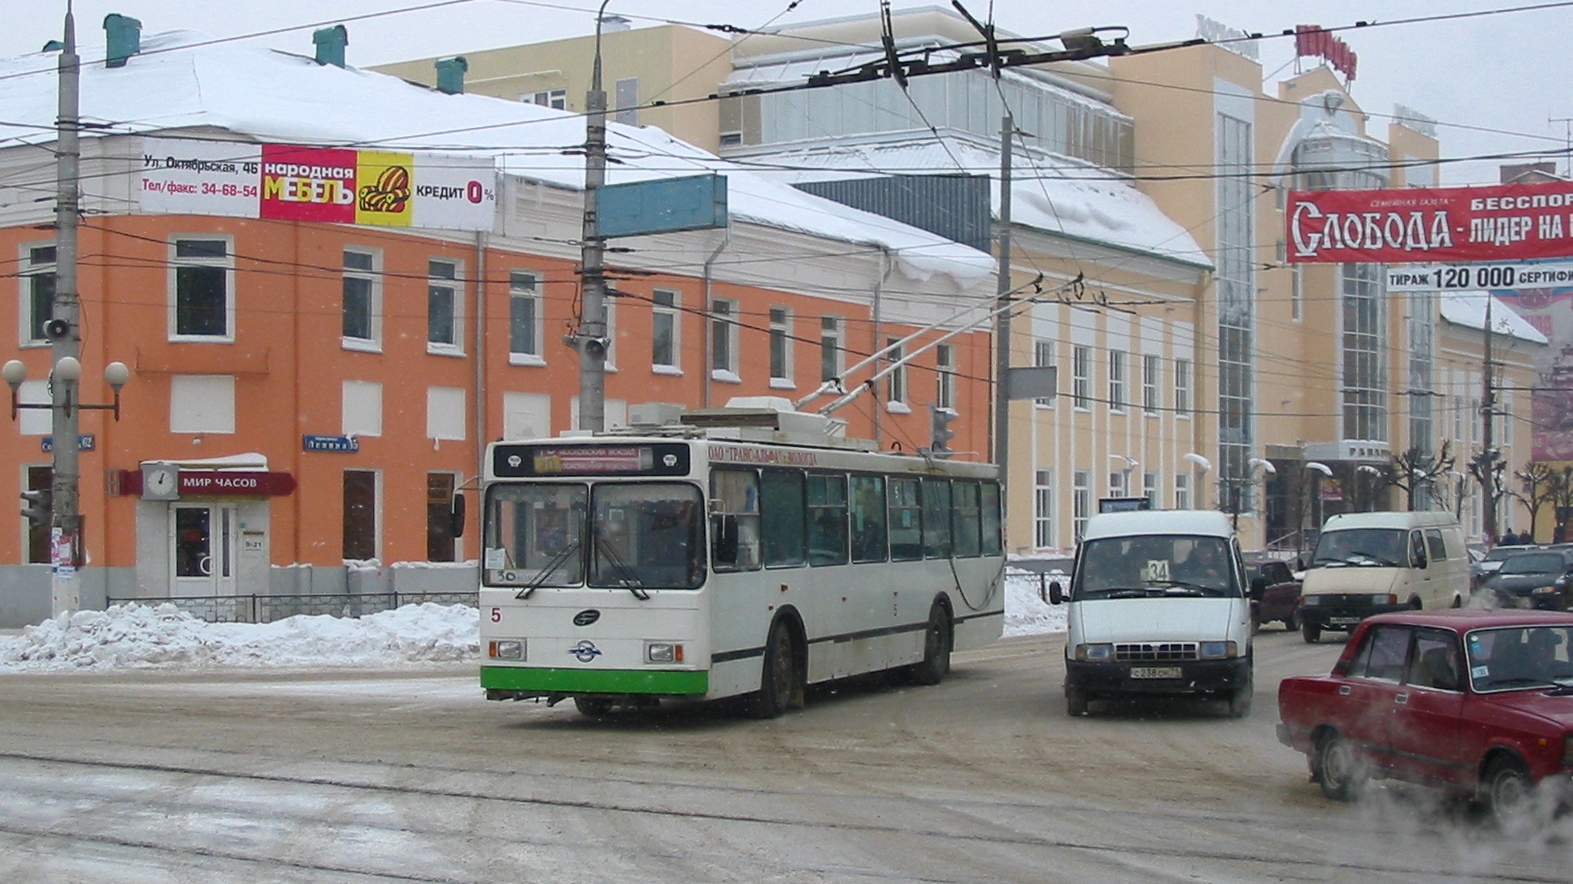 Троллейбус 5  ВМЗ-5298-20 build 2004, списан в 2015